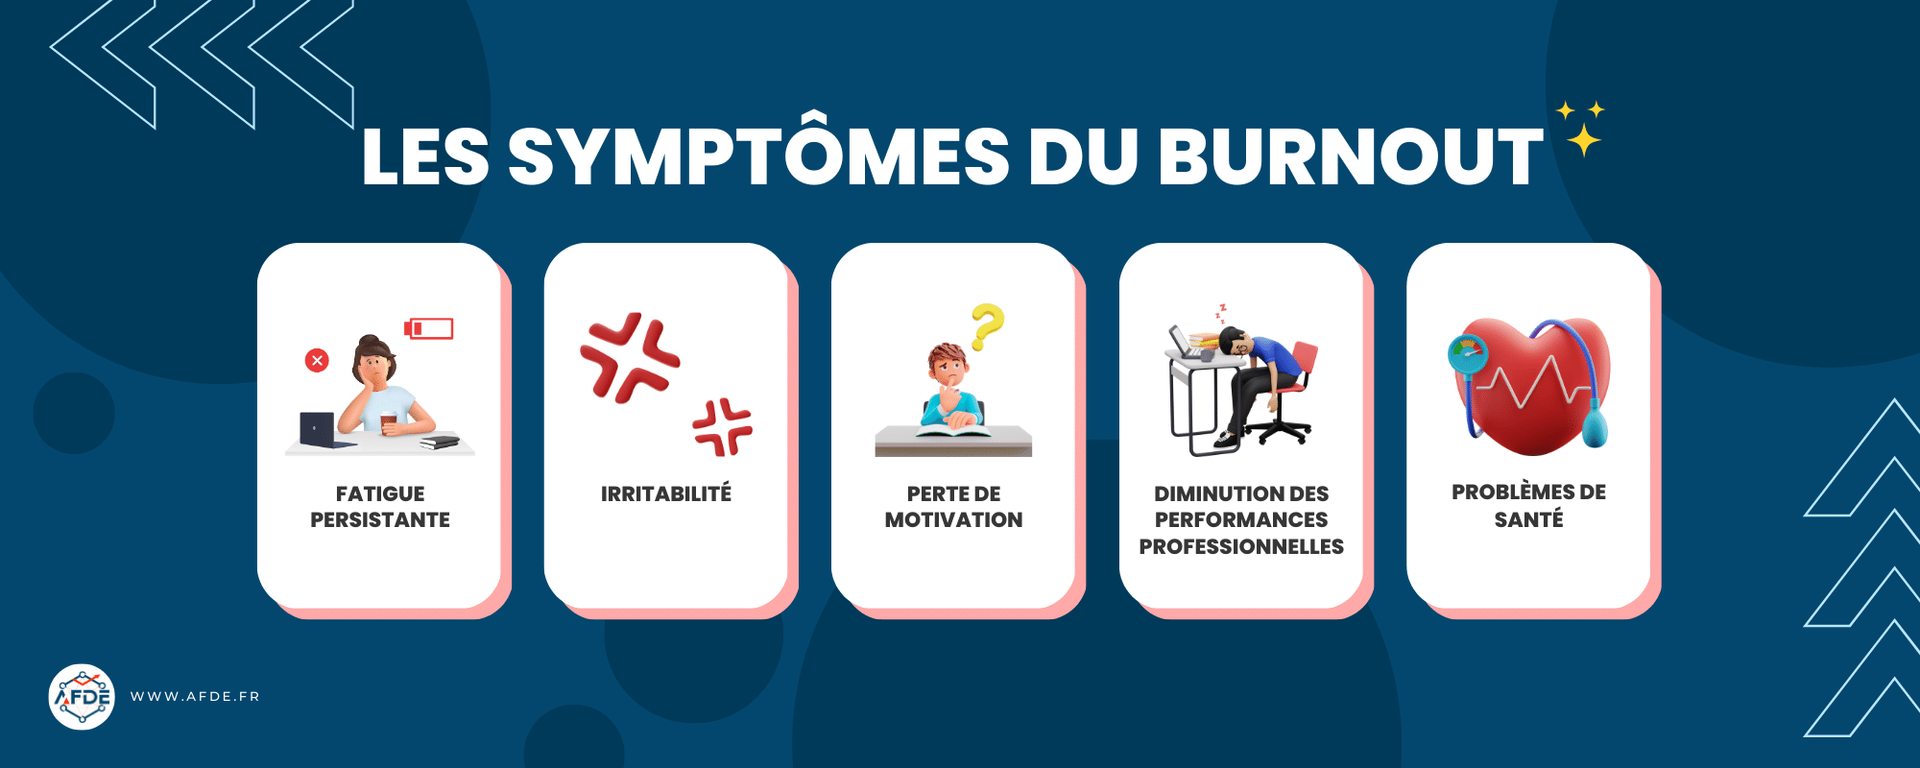 Infographie présentant les symptômes du burnout les plus fréquents.